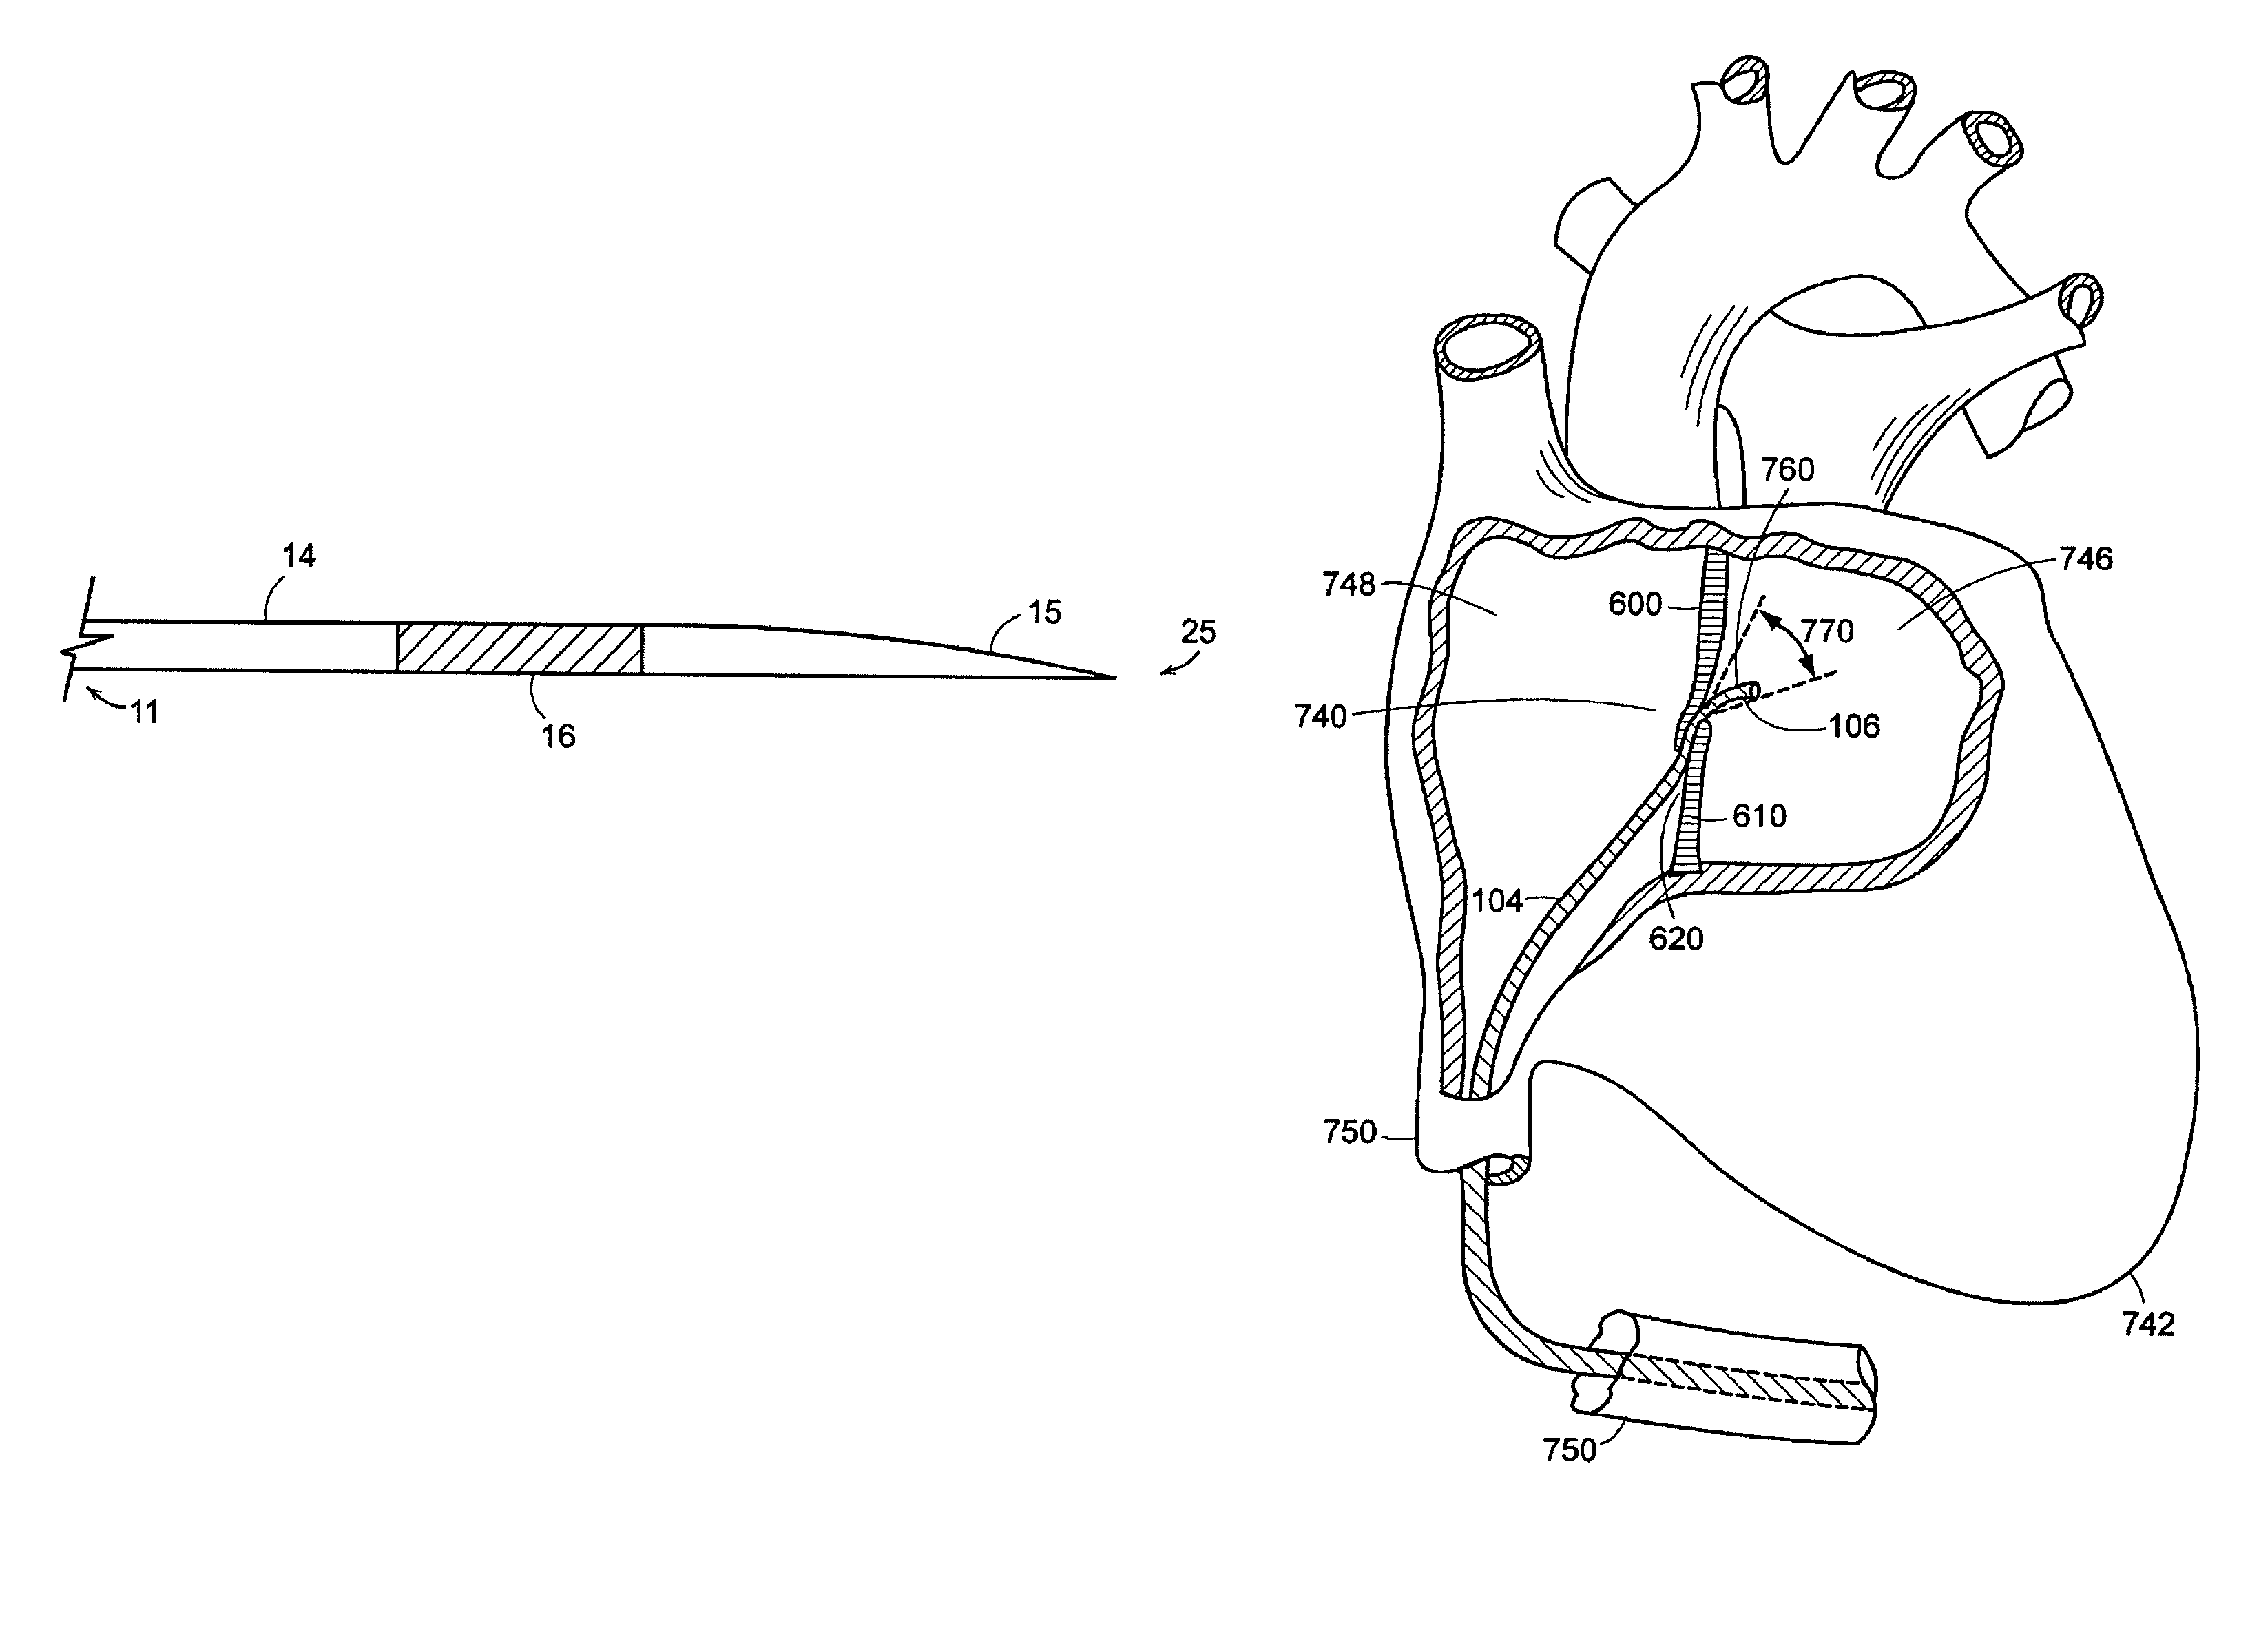 Transseptal puncture apparatus